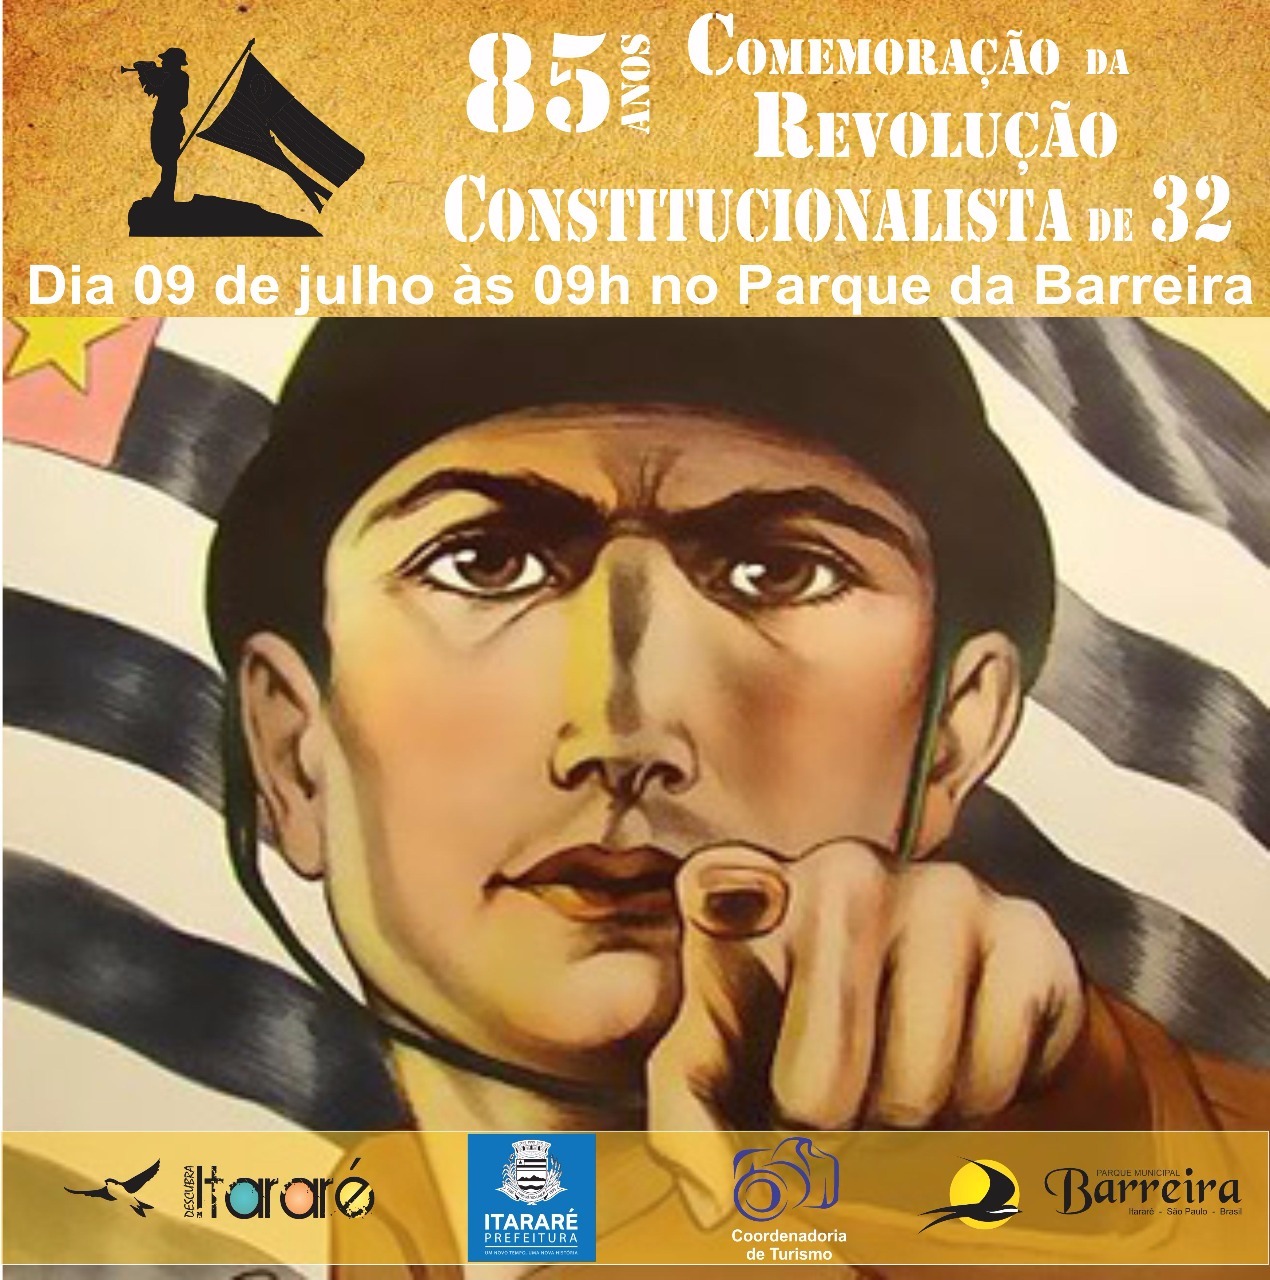 Prefeitura de Itararé (SP) promove evento em comemoração à Revolução Constitucionalista de 1932